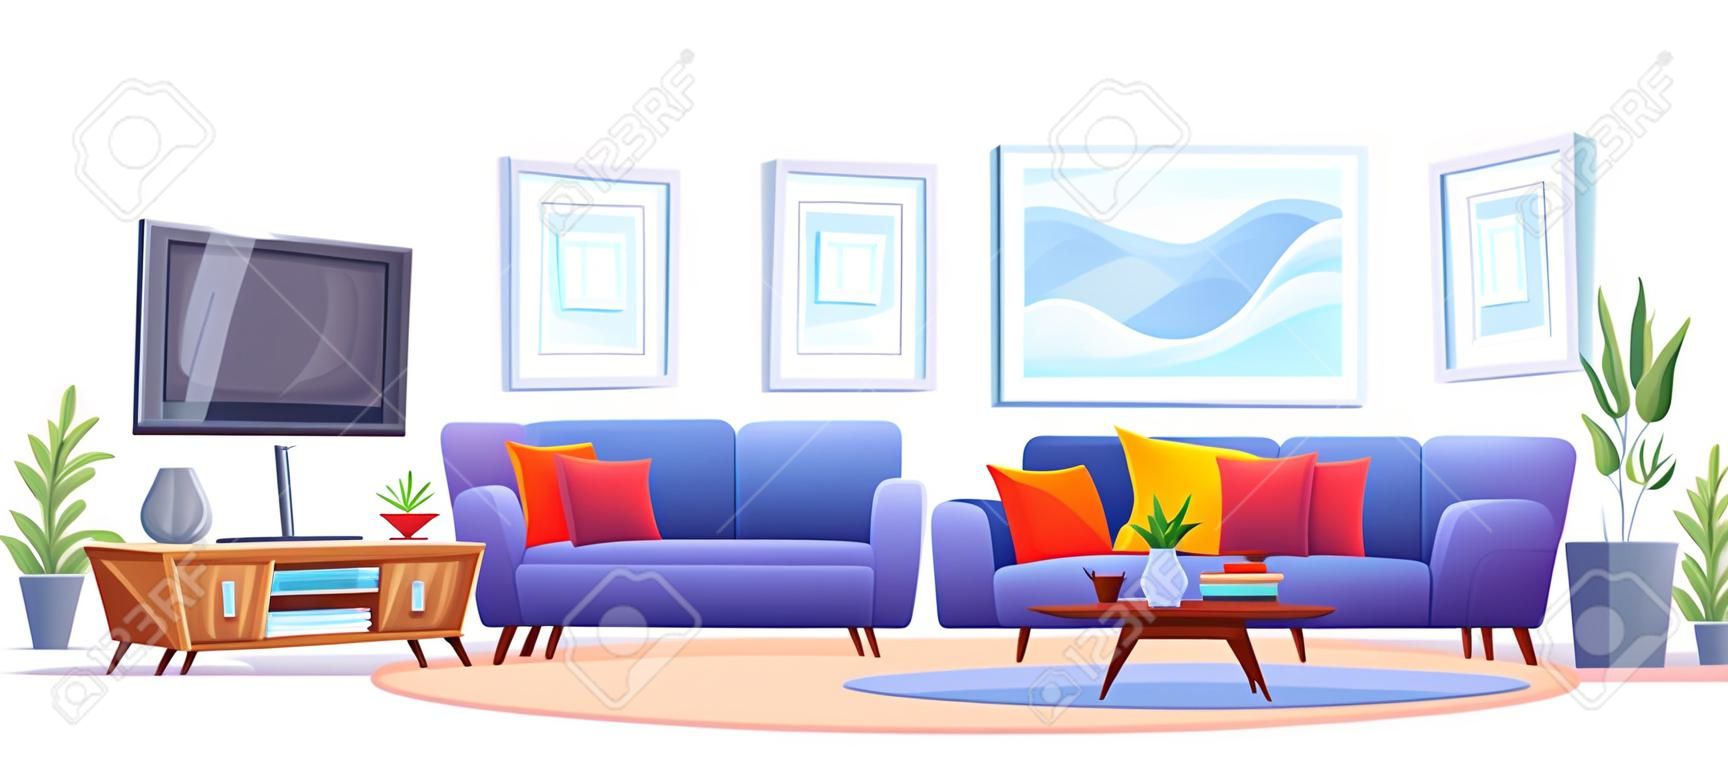 Wnętrze domu z meblami i telewizorem Pokój dzienny z niebieską sofą Telewizor na stojaku Stolik kawowy Dywan Regał Rośliny i zdjęcia na ścianie wektor ilustracja kreskówka izolowana na białym